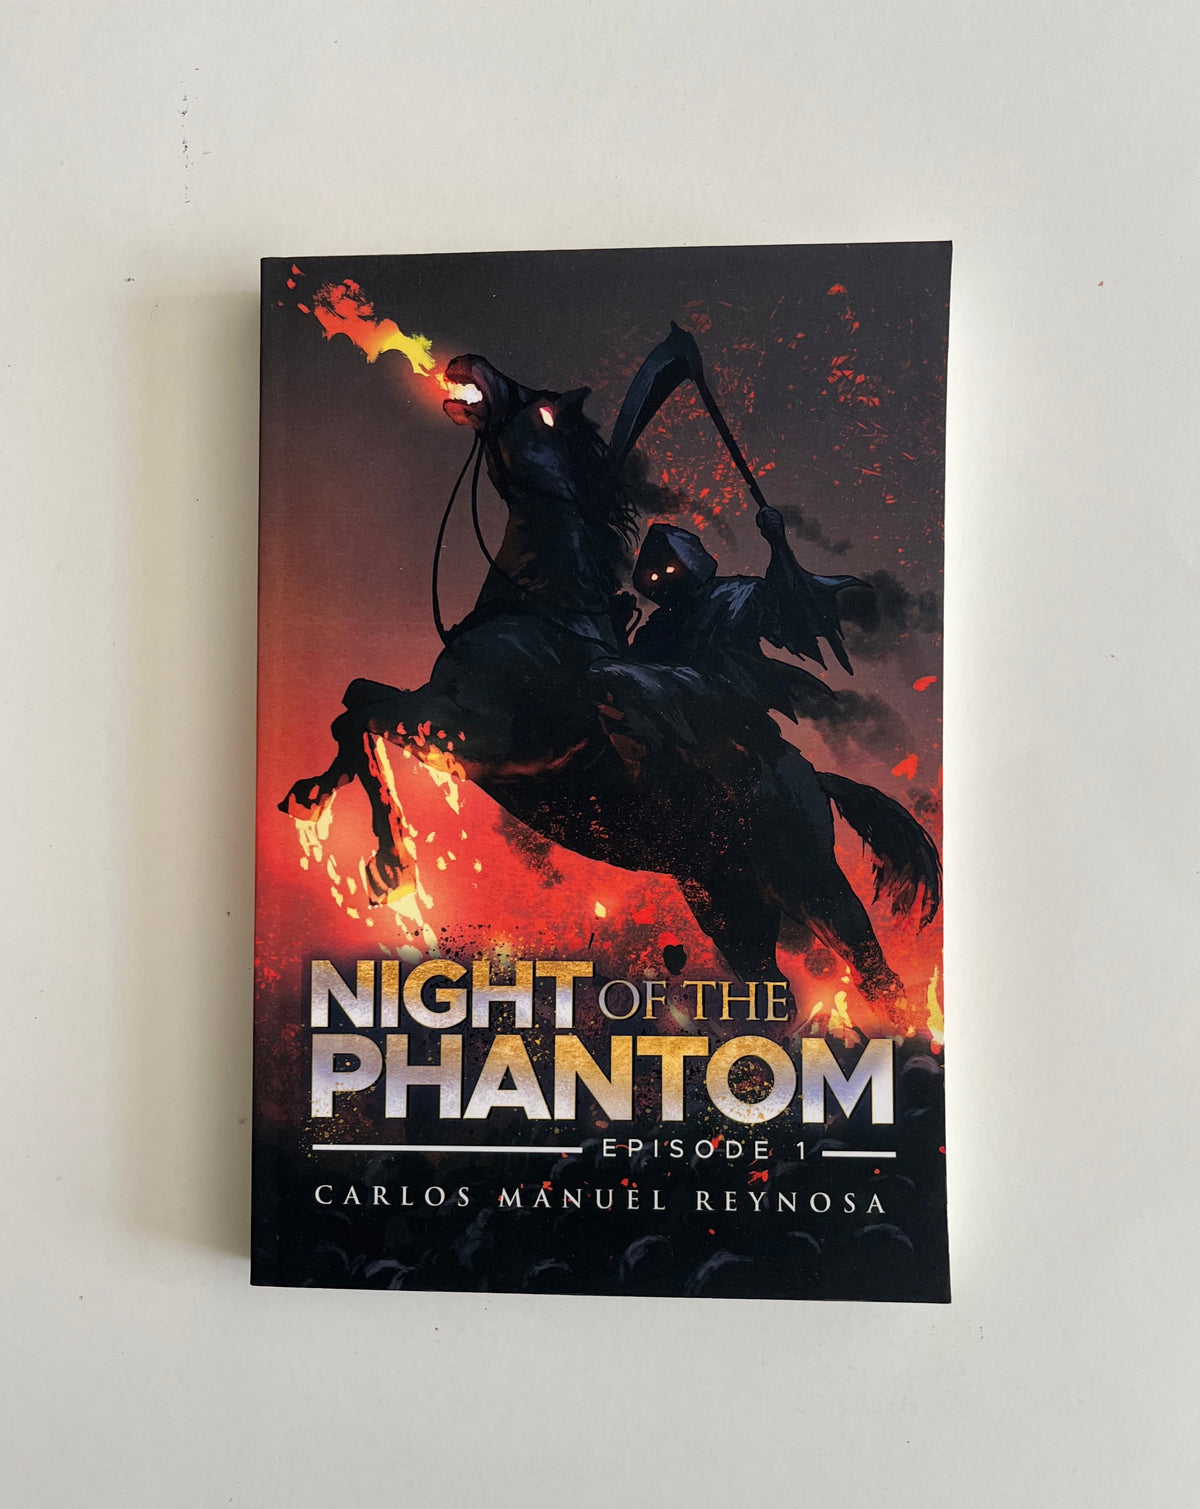 Night of the Phantom by Carlos Manuel Reynosa